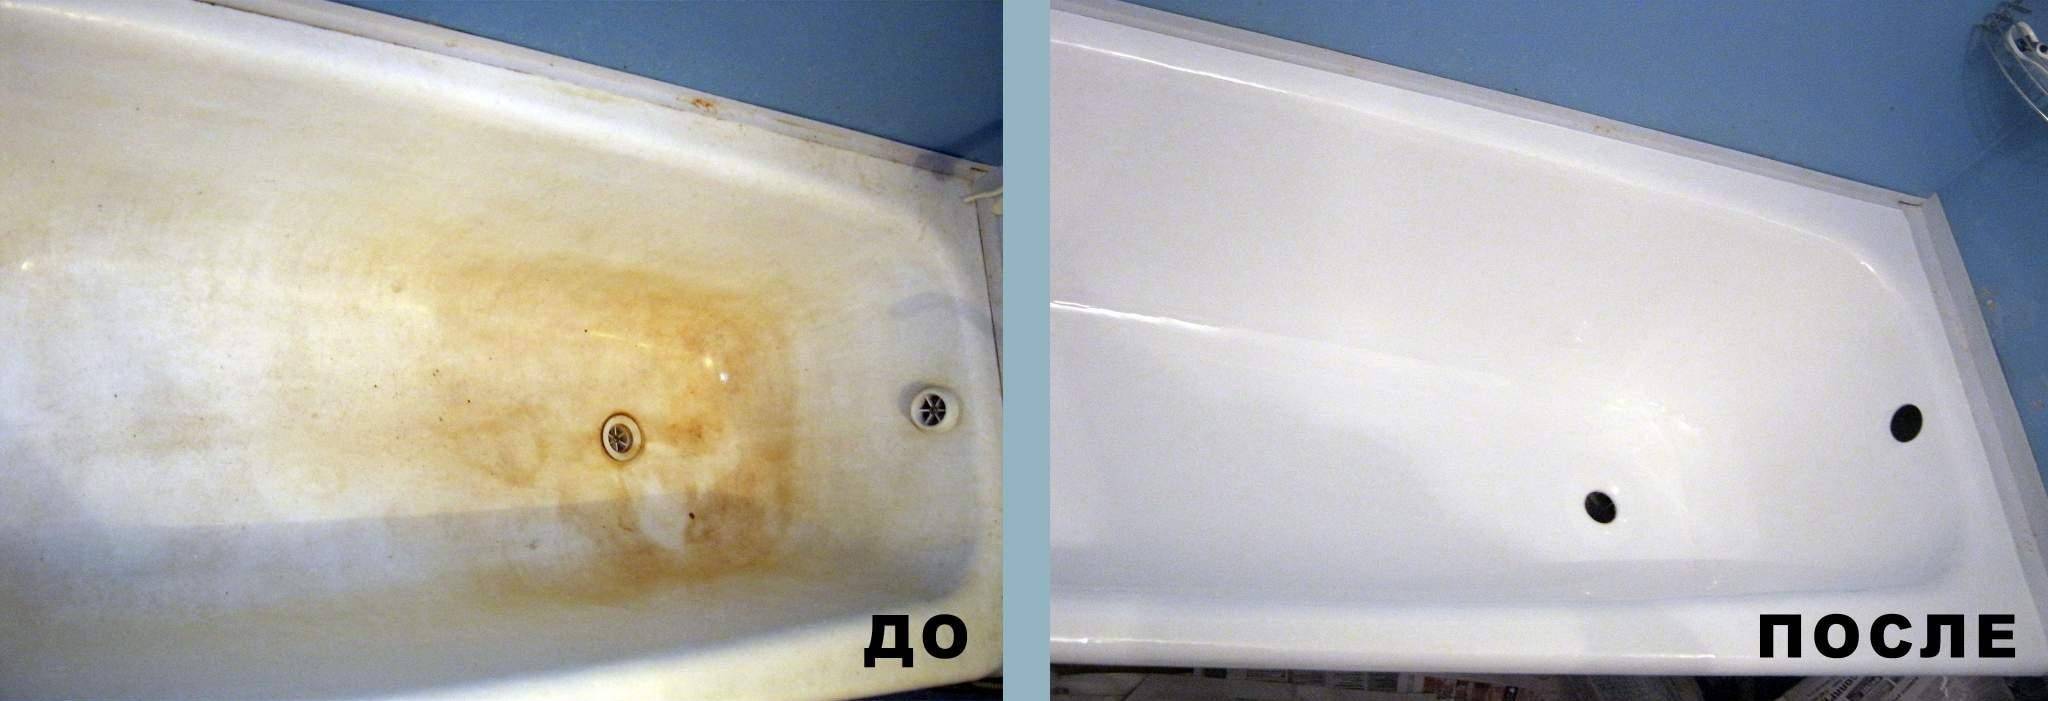 Акрил жидкий для ванны: области применения и преимущества, подготовка поверхности и технология нанесения, цена